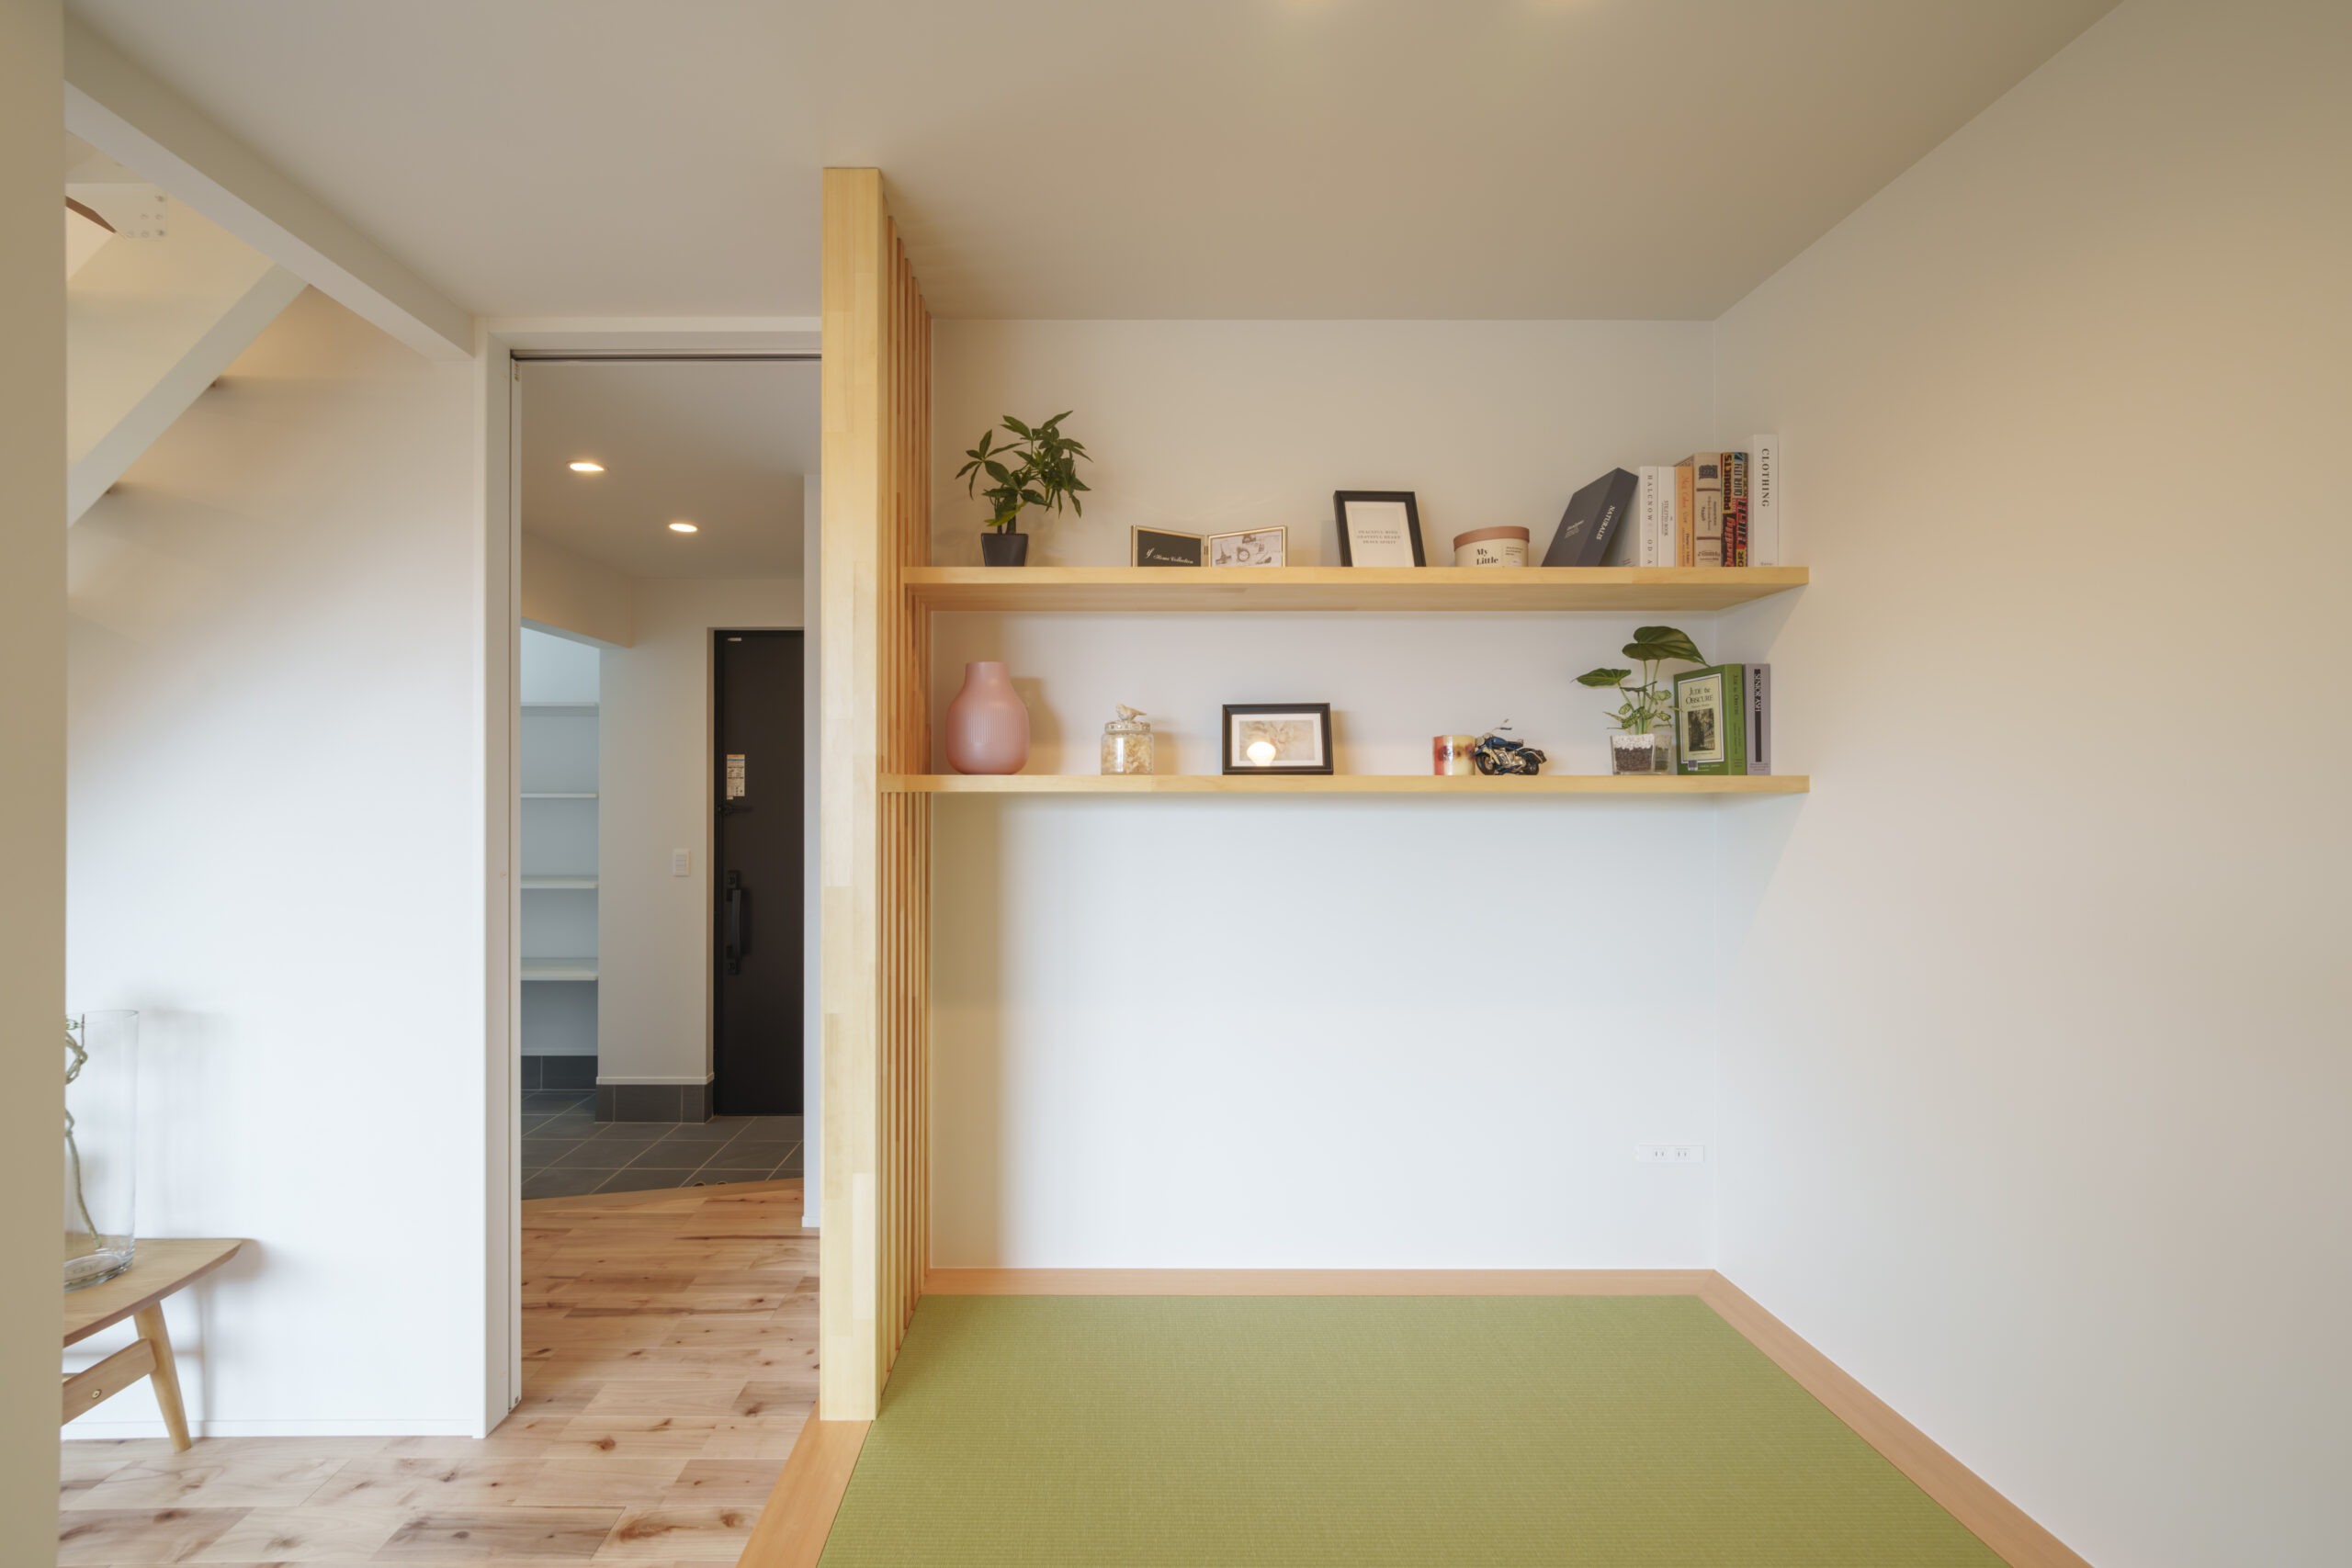 和室が小上がりになっていることで、独立した部屋としても使えます。